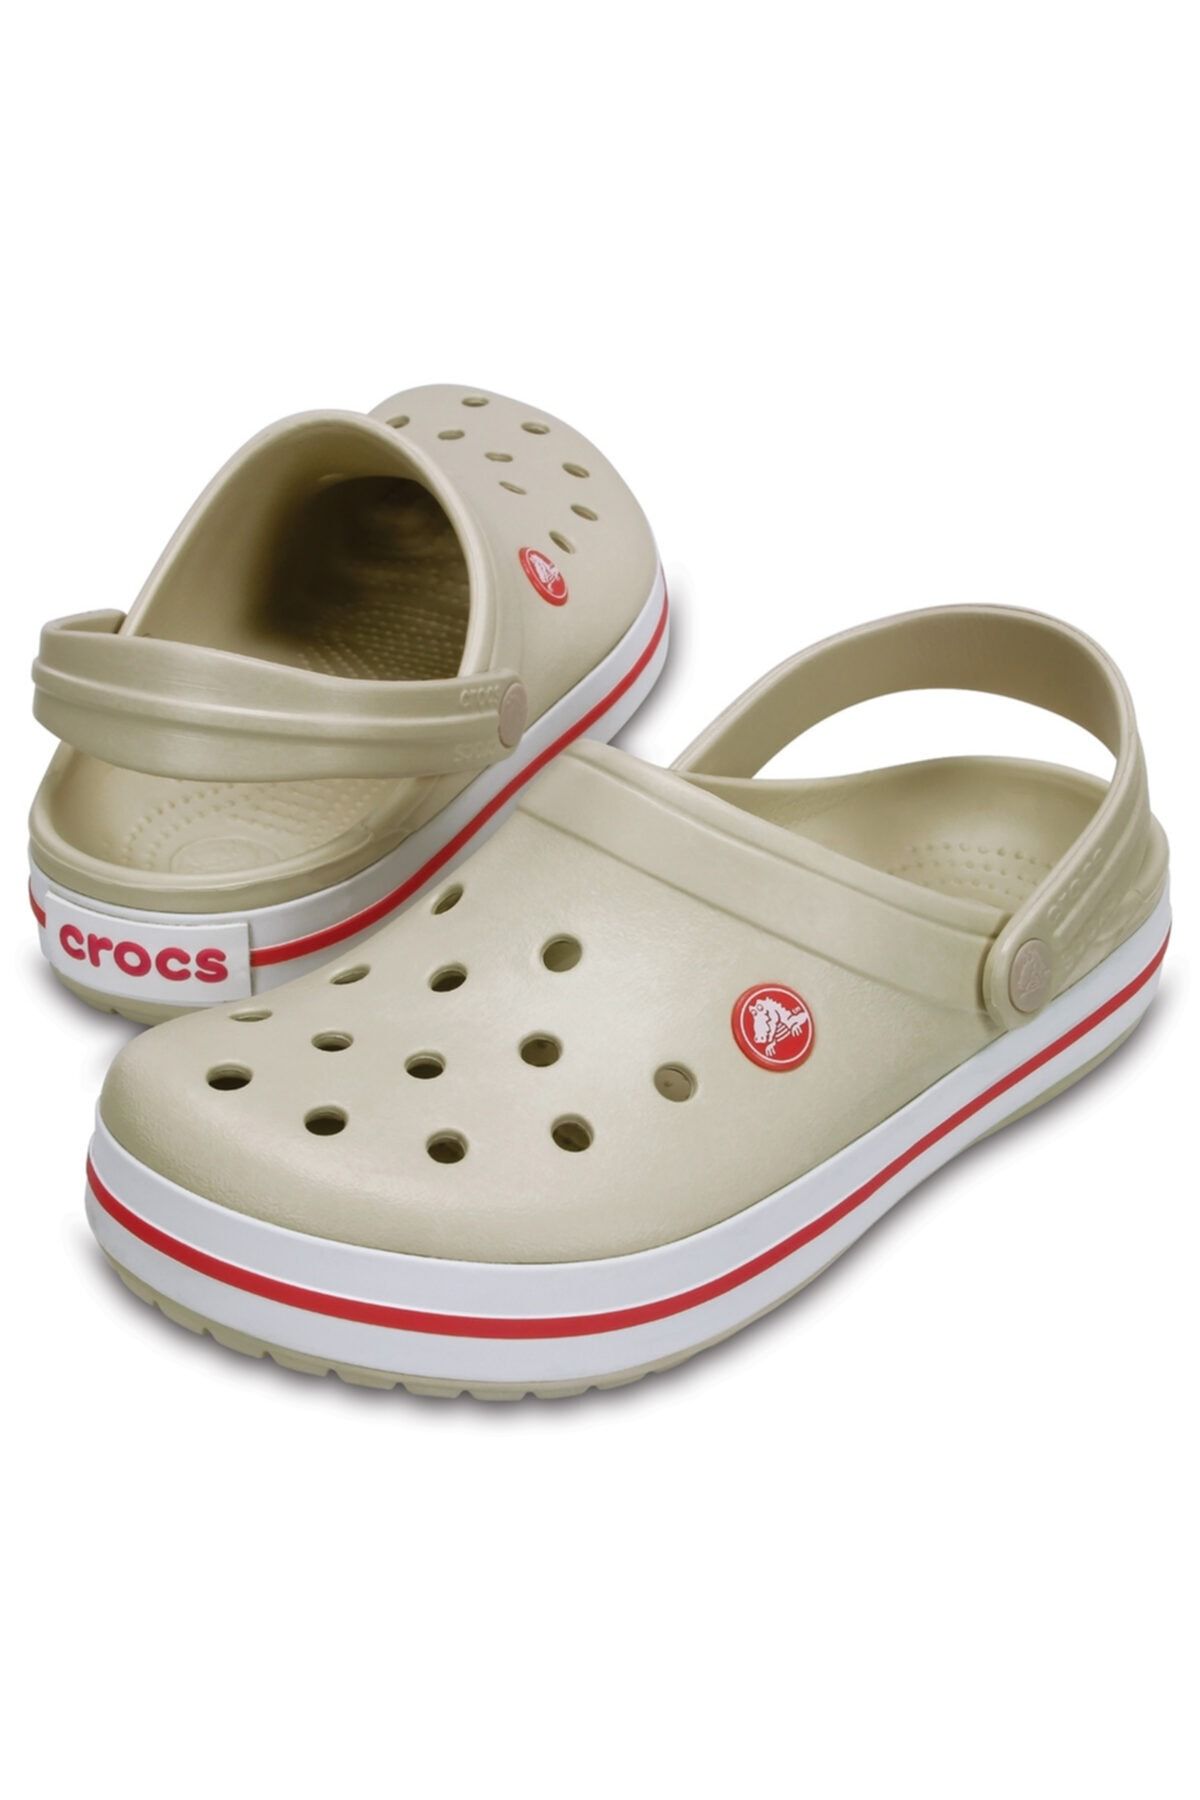 Crocs Crocband دمپایی گچ/خربزه